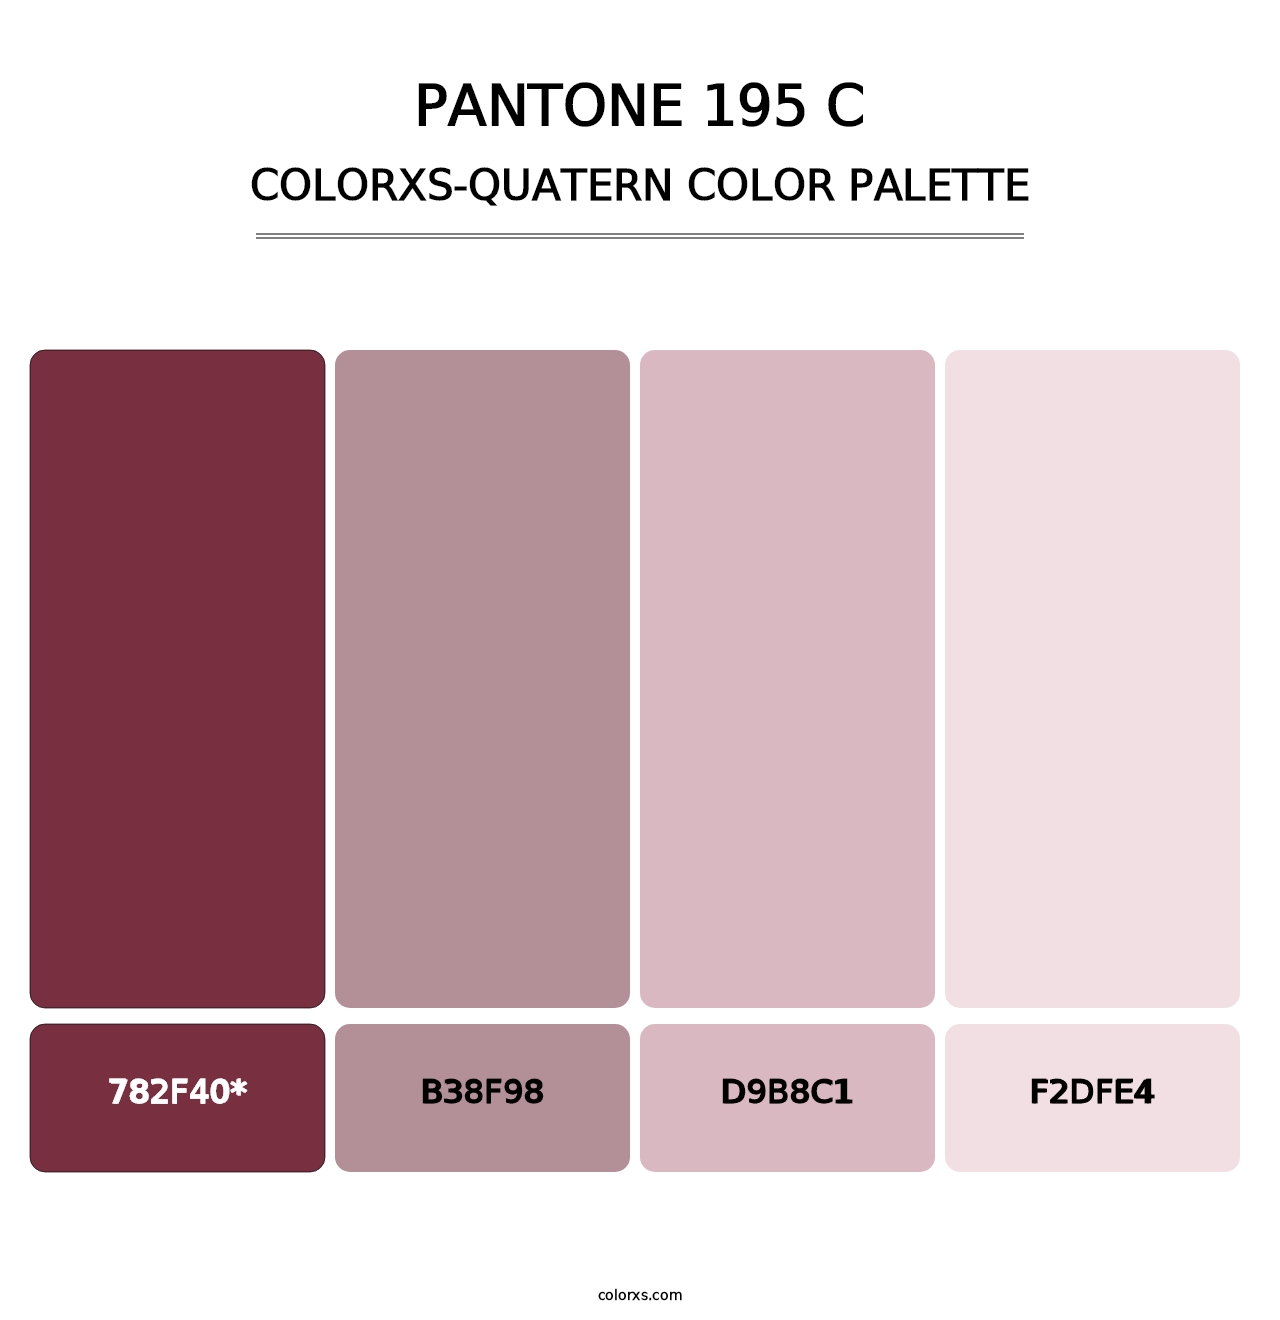 PANTONE 195 C - Colorxs Quatern Palette